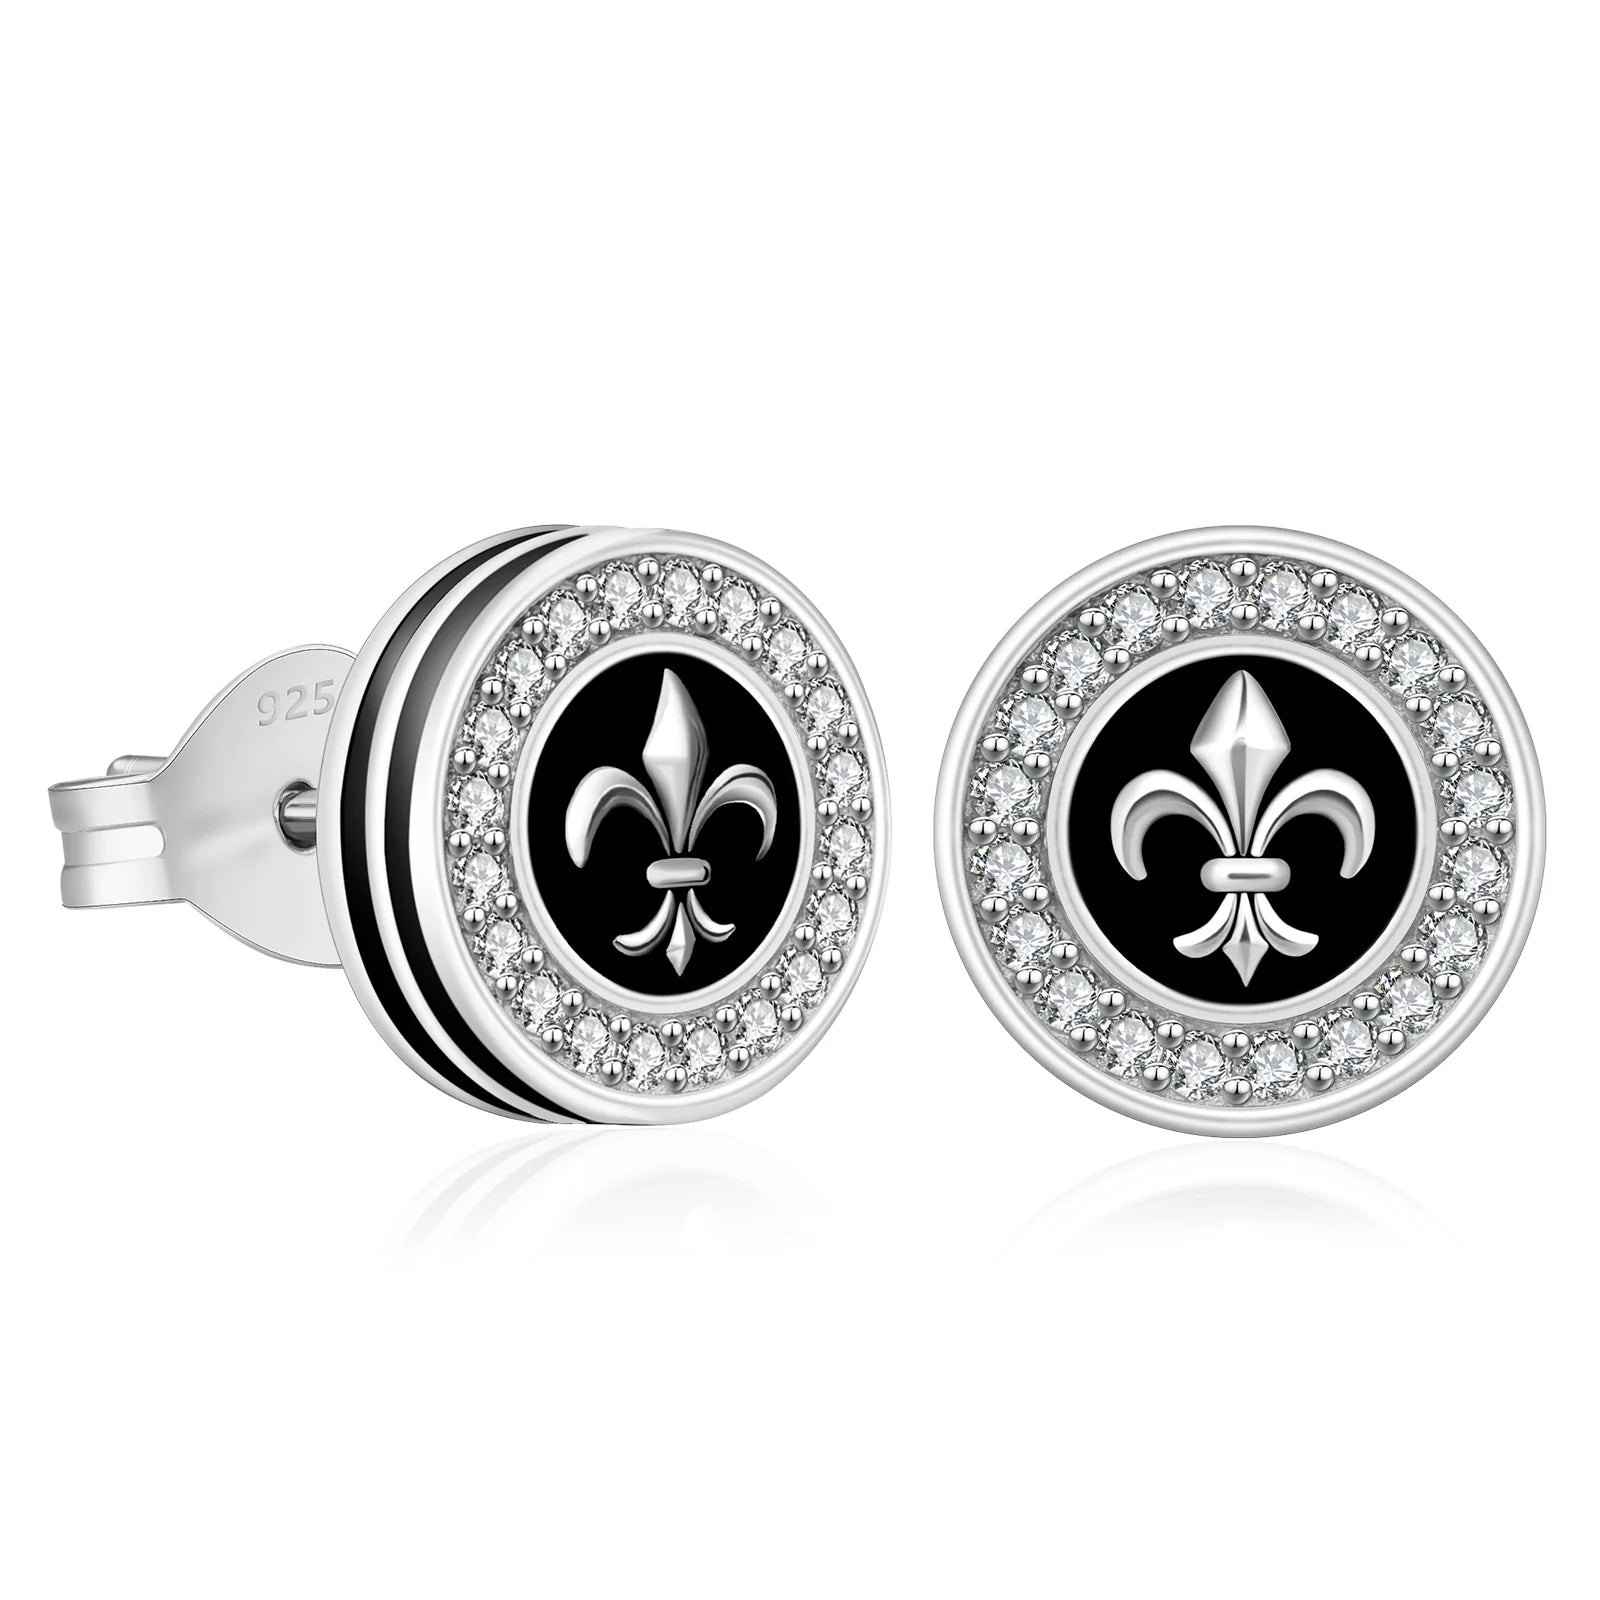 9mm Black Iced Diamond Stud Earrings - Fleur-de-lis Lily flower Earrings 